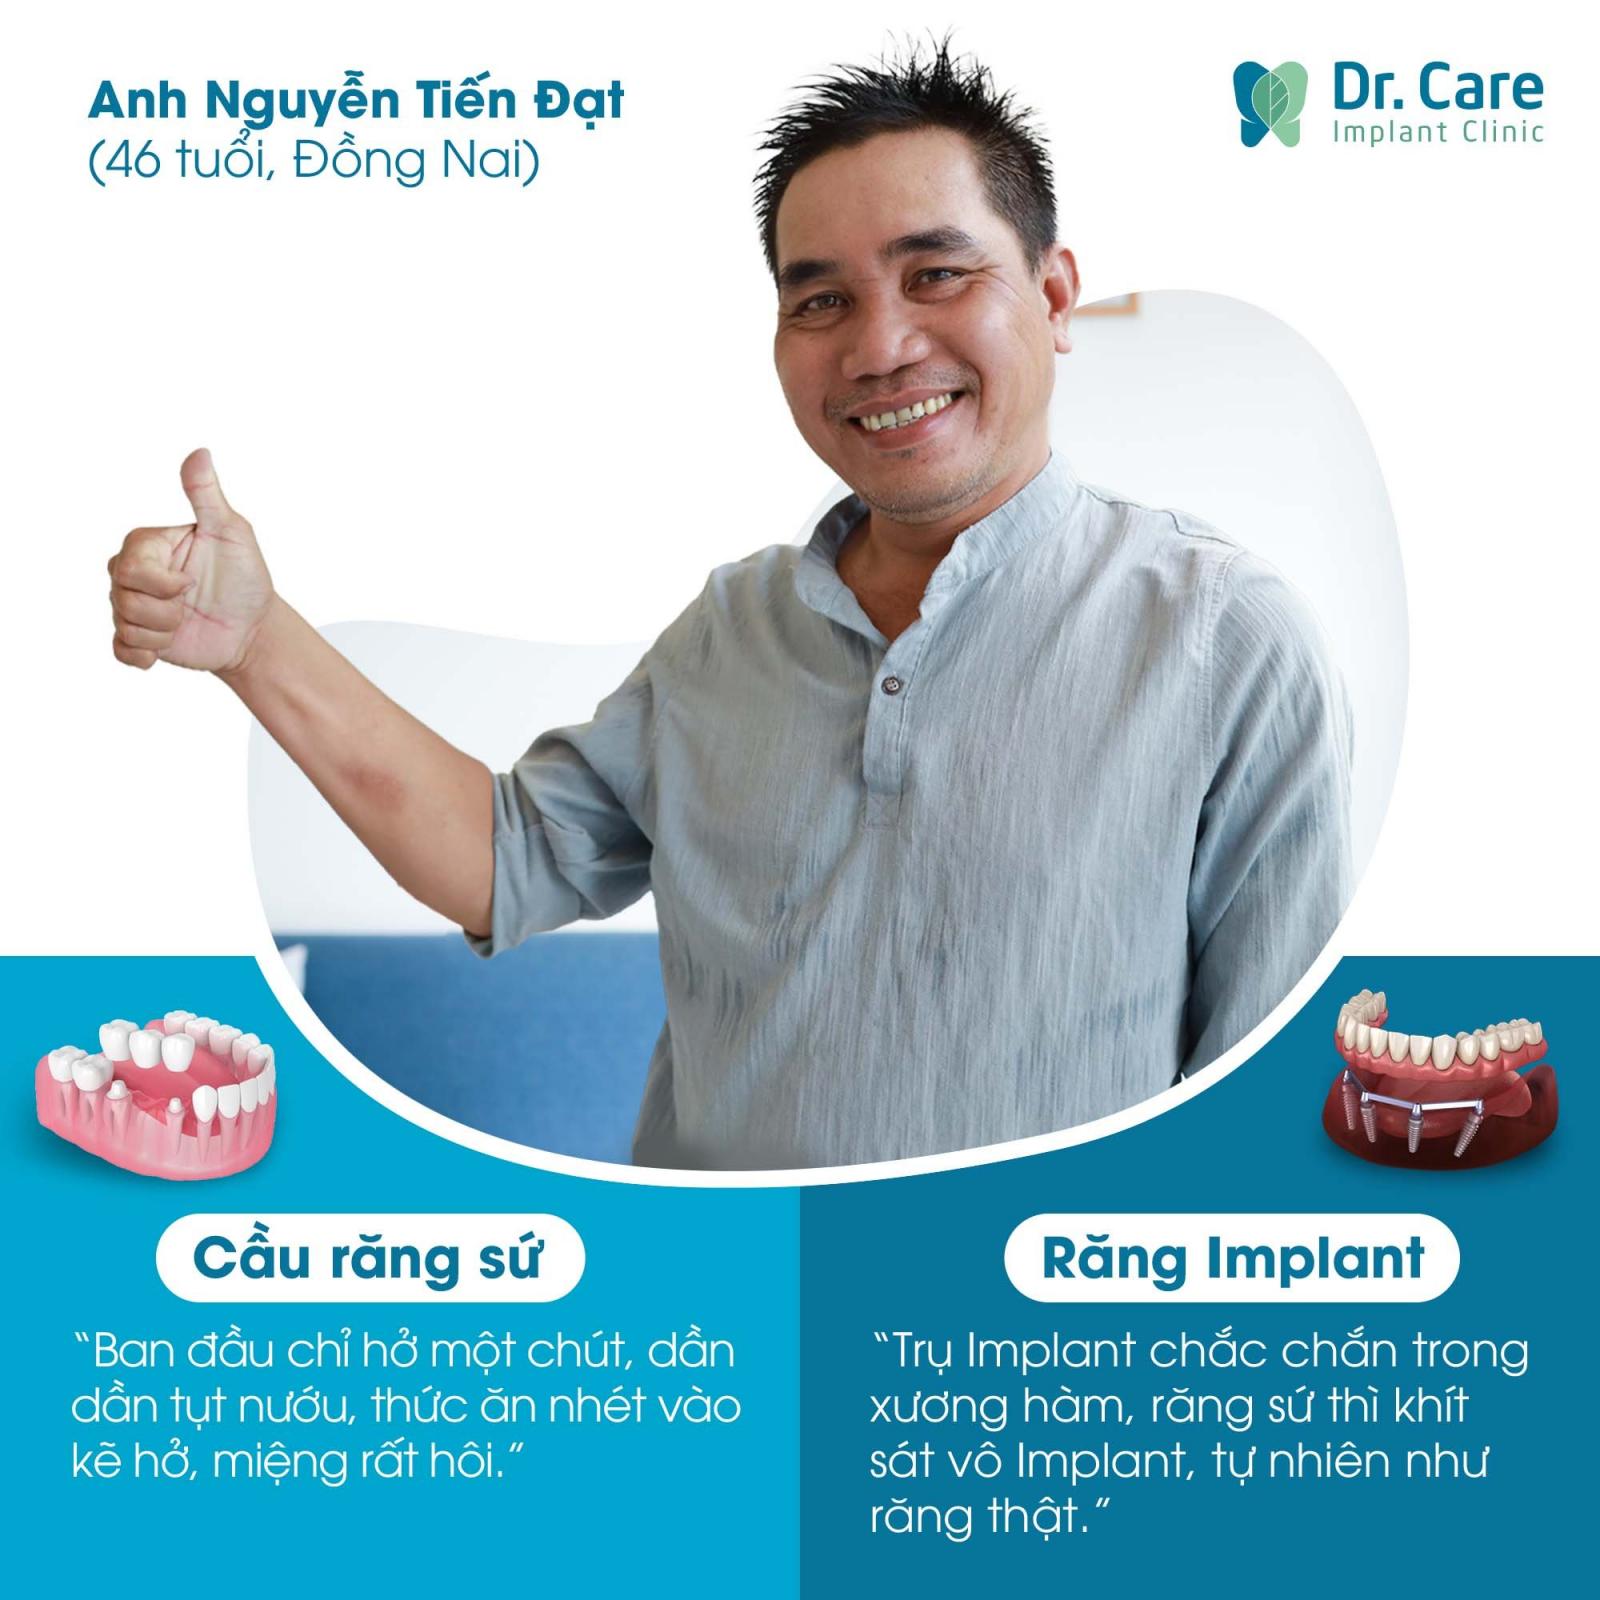 Trồng răng Implant thay bọc răng sứ tại Dr.Care